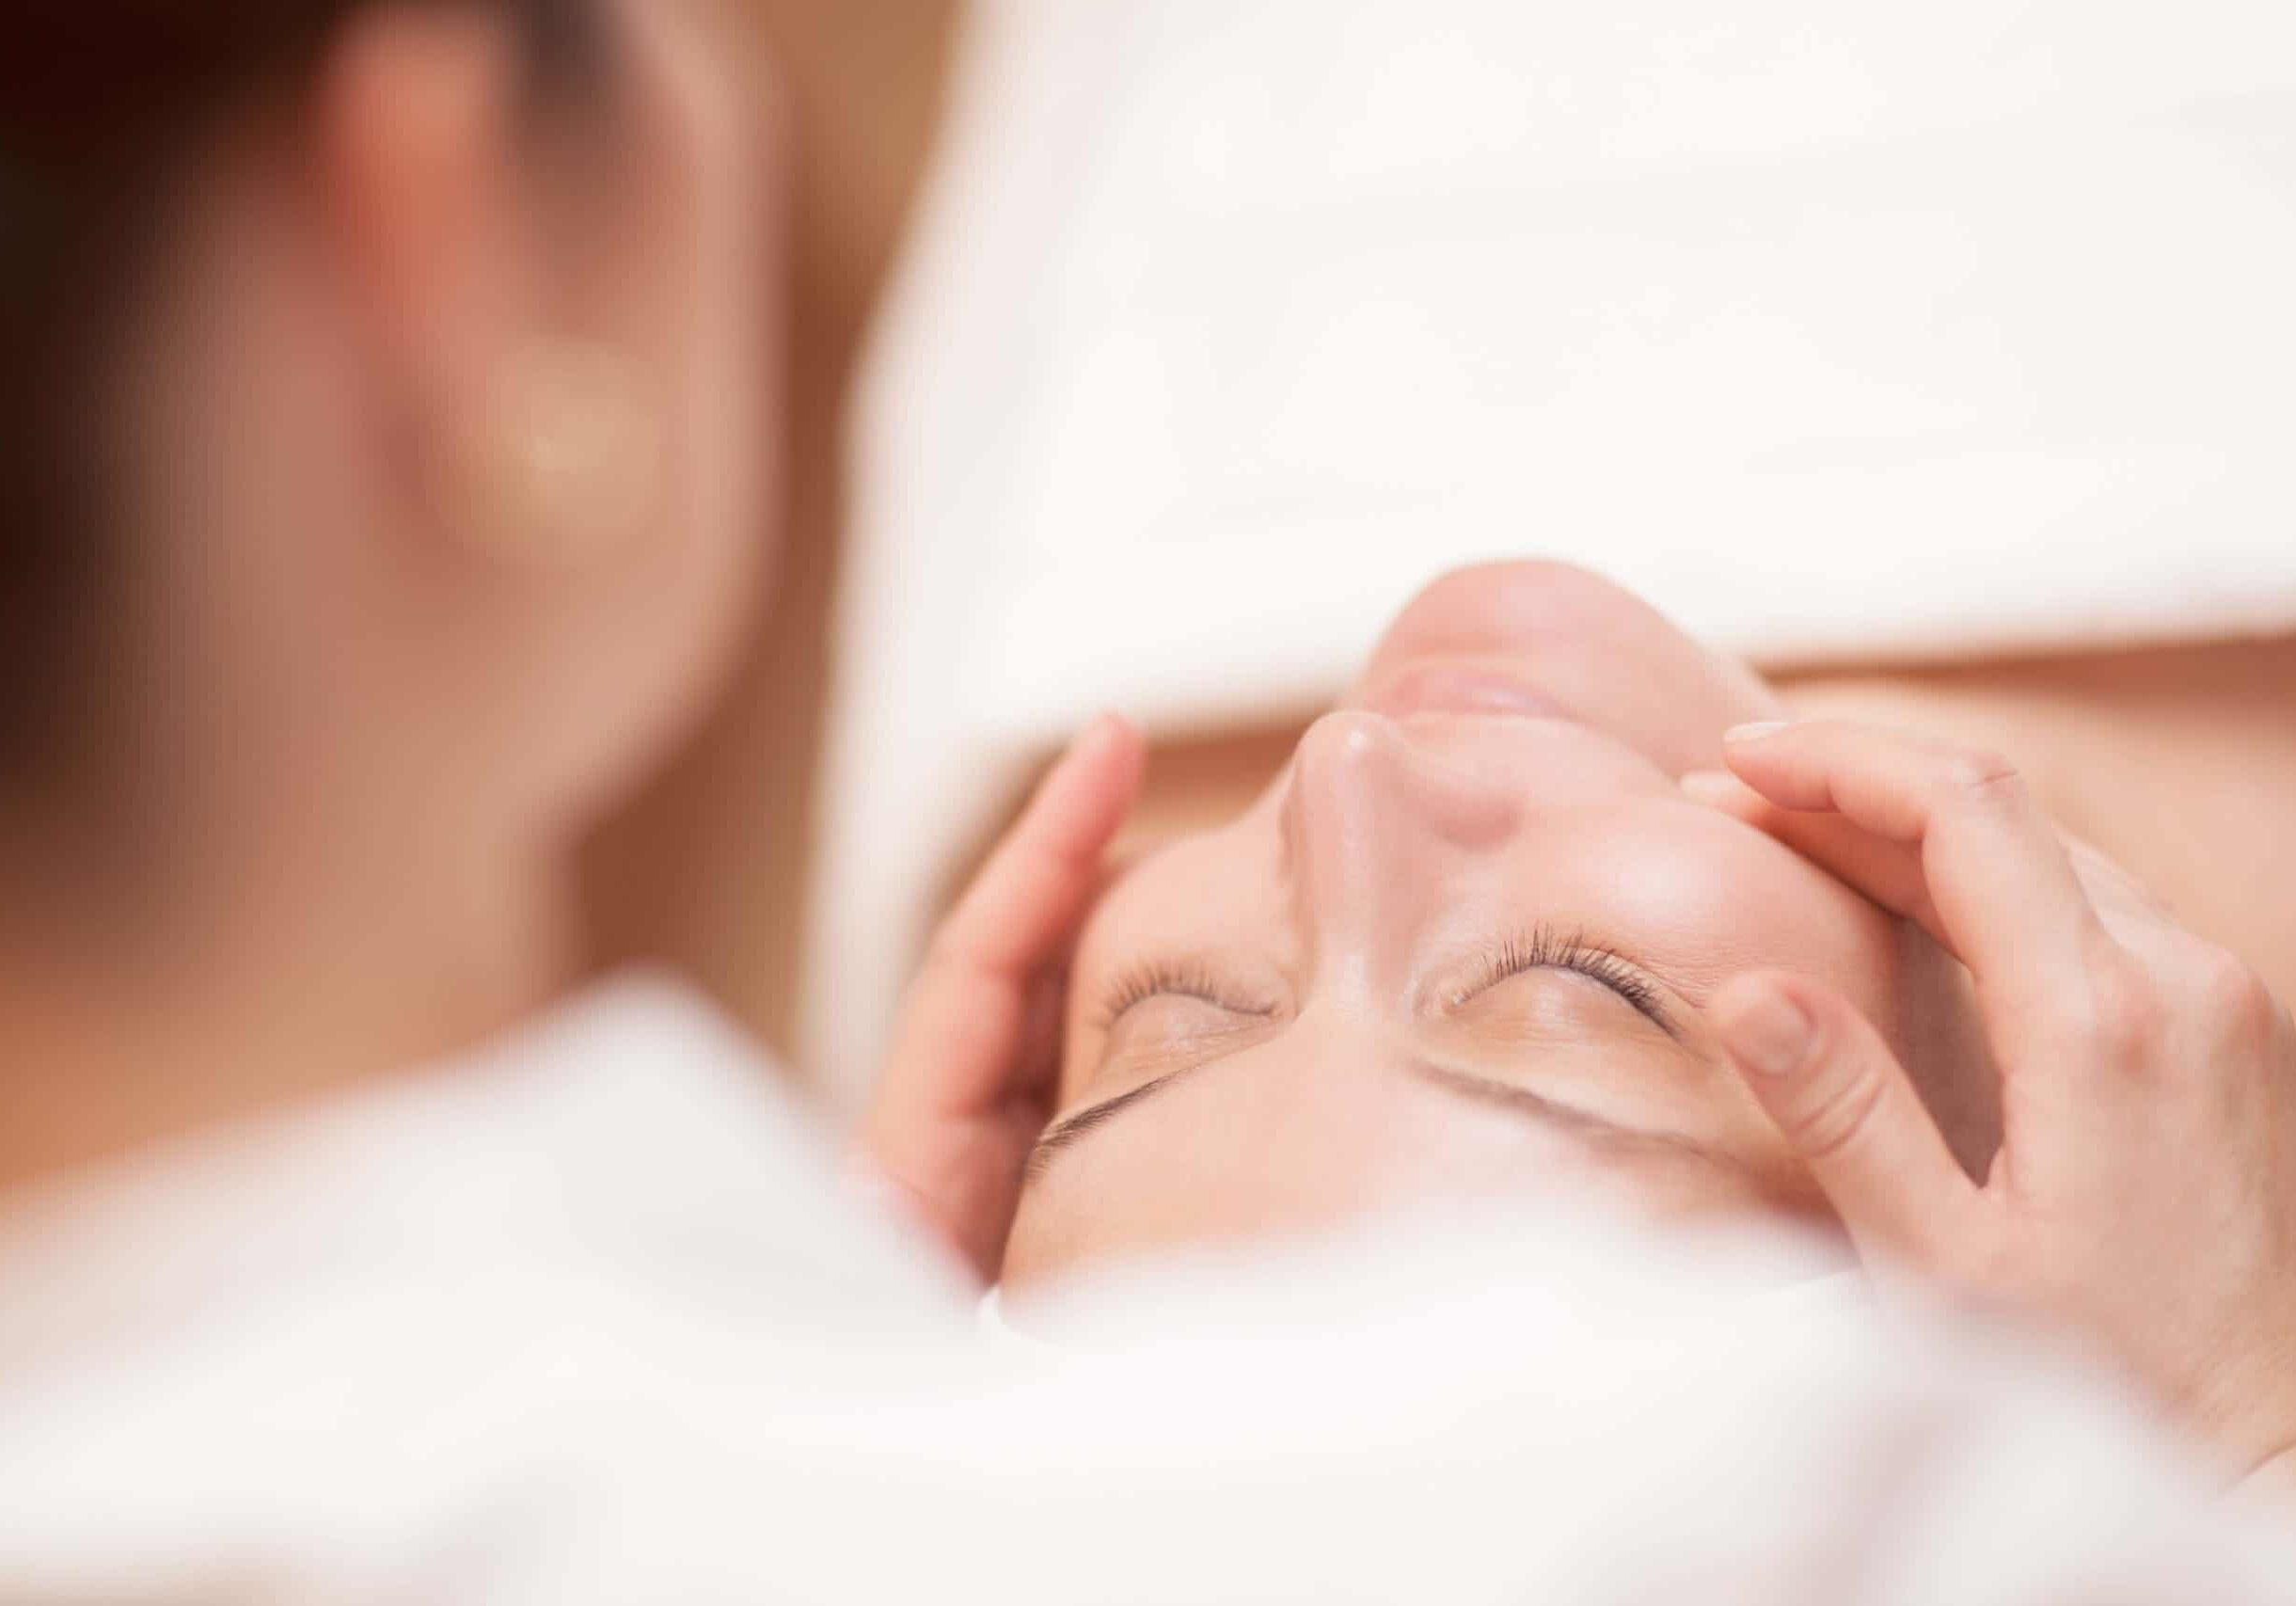 women receiving a facial massage from an esthetician